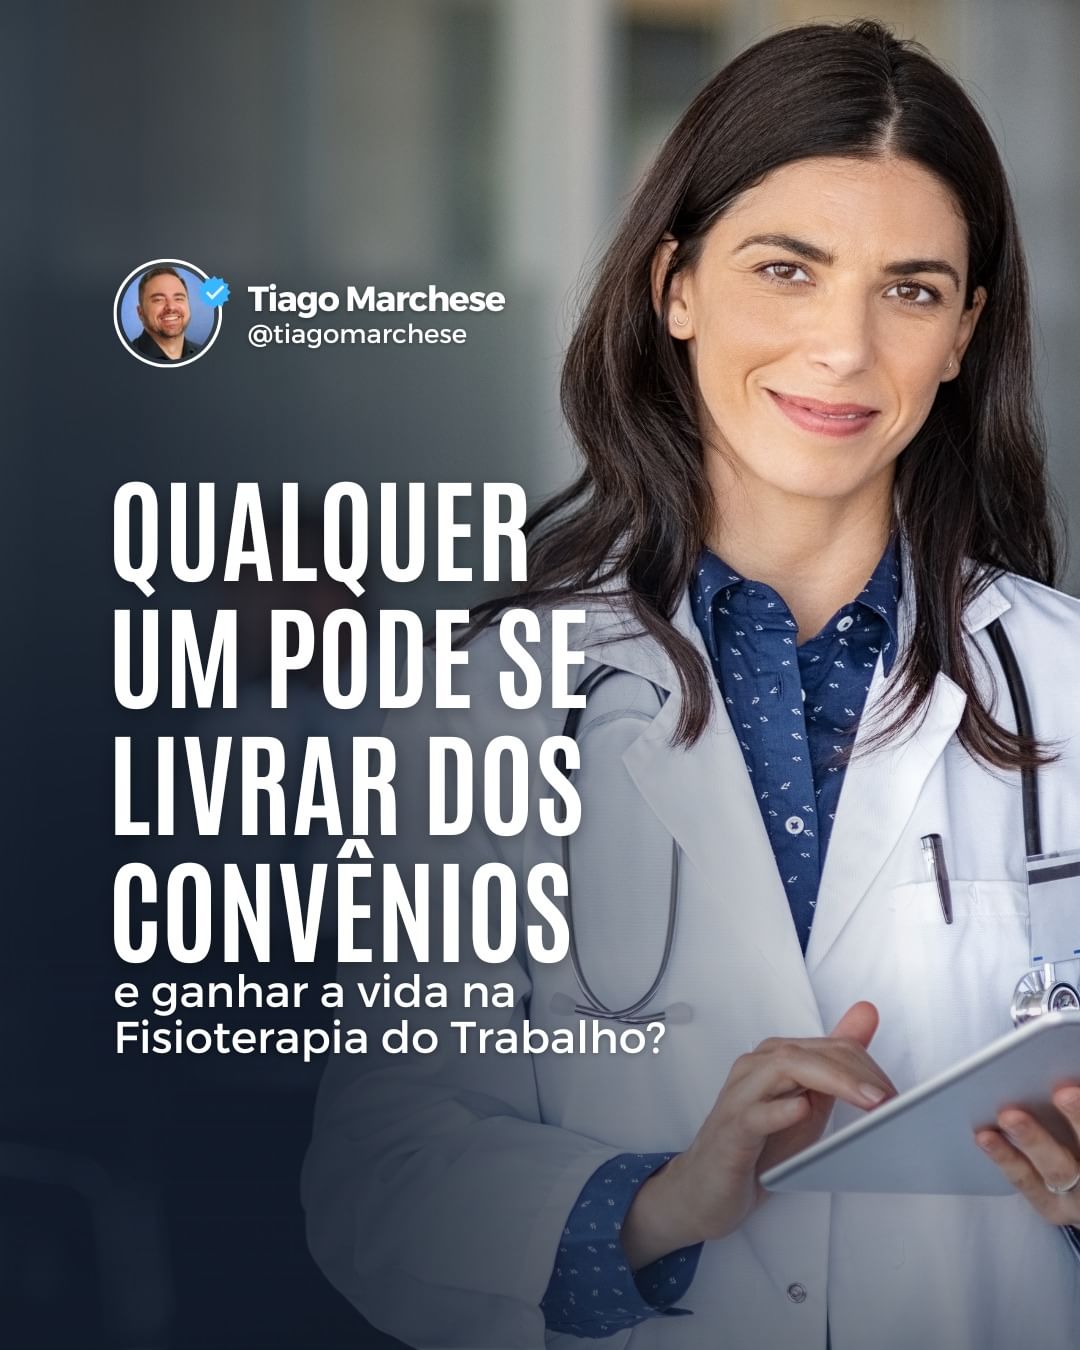 Read more about the article Qualquer um pode se livrar dos convênios e ganhar a vida com Fisioterapia do Trabalho?